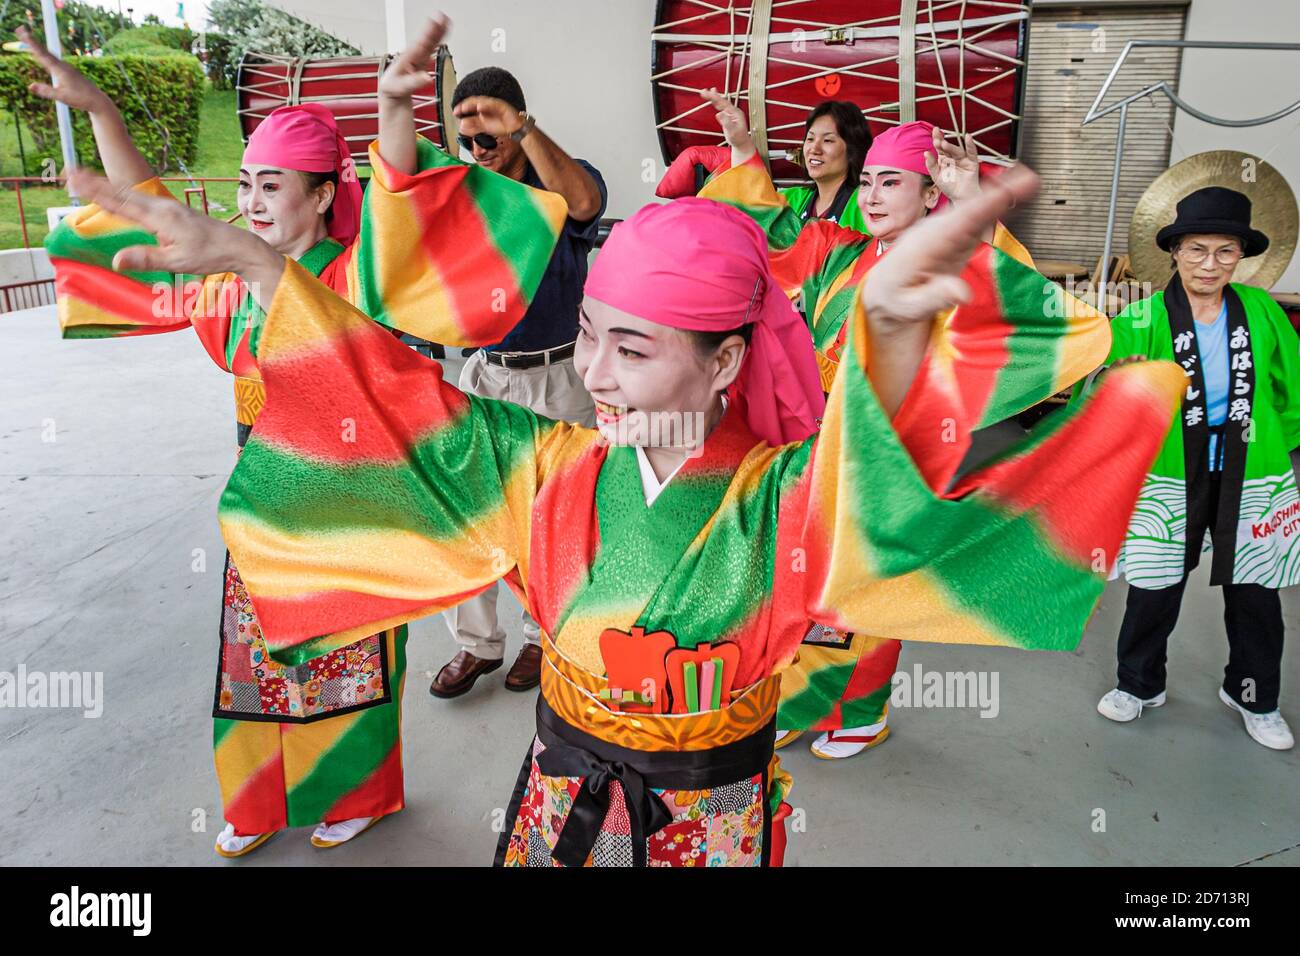 Miami Florida, Bayfront Park Japanisches Festival jährliche asiatische Frauen Tänzer tanzen Kostüme Outfits Regalia Kleidung, Stockfoto